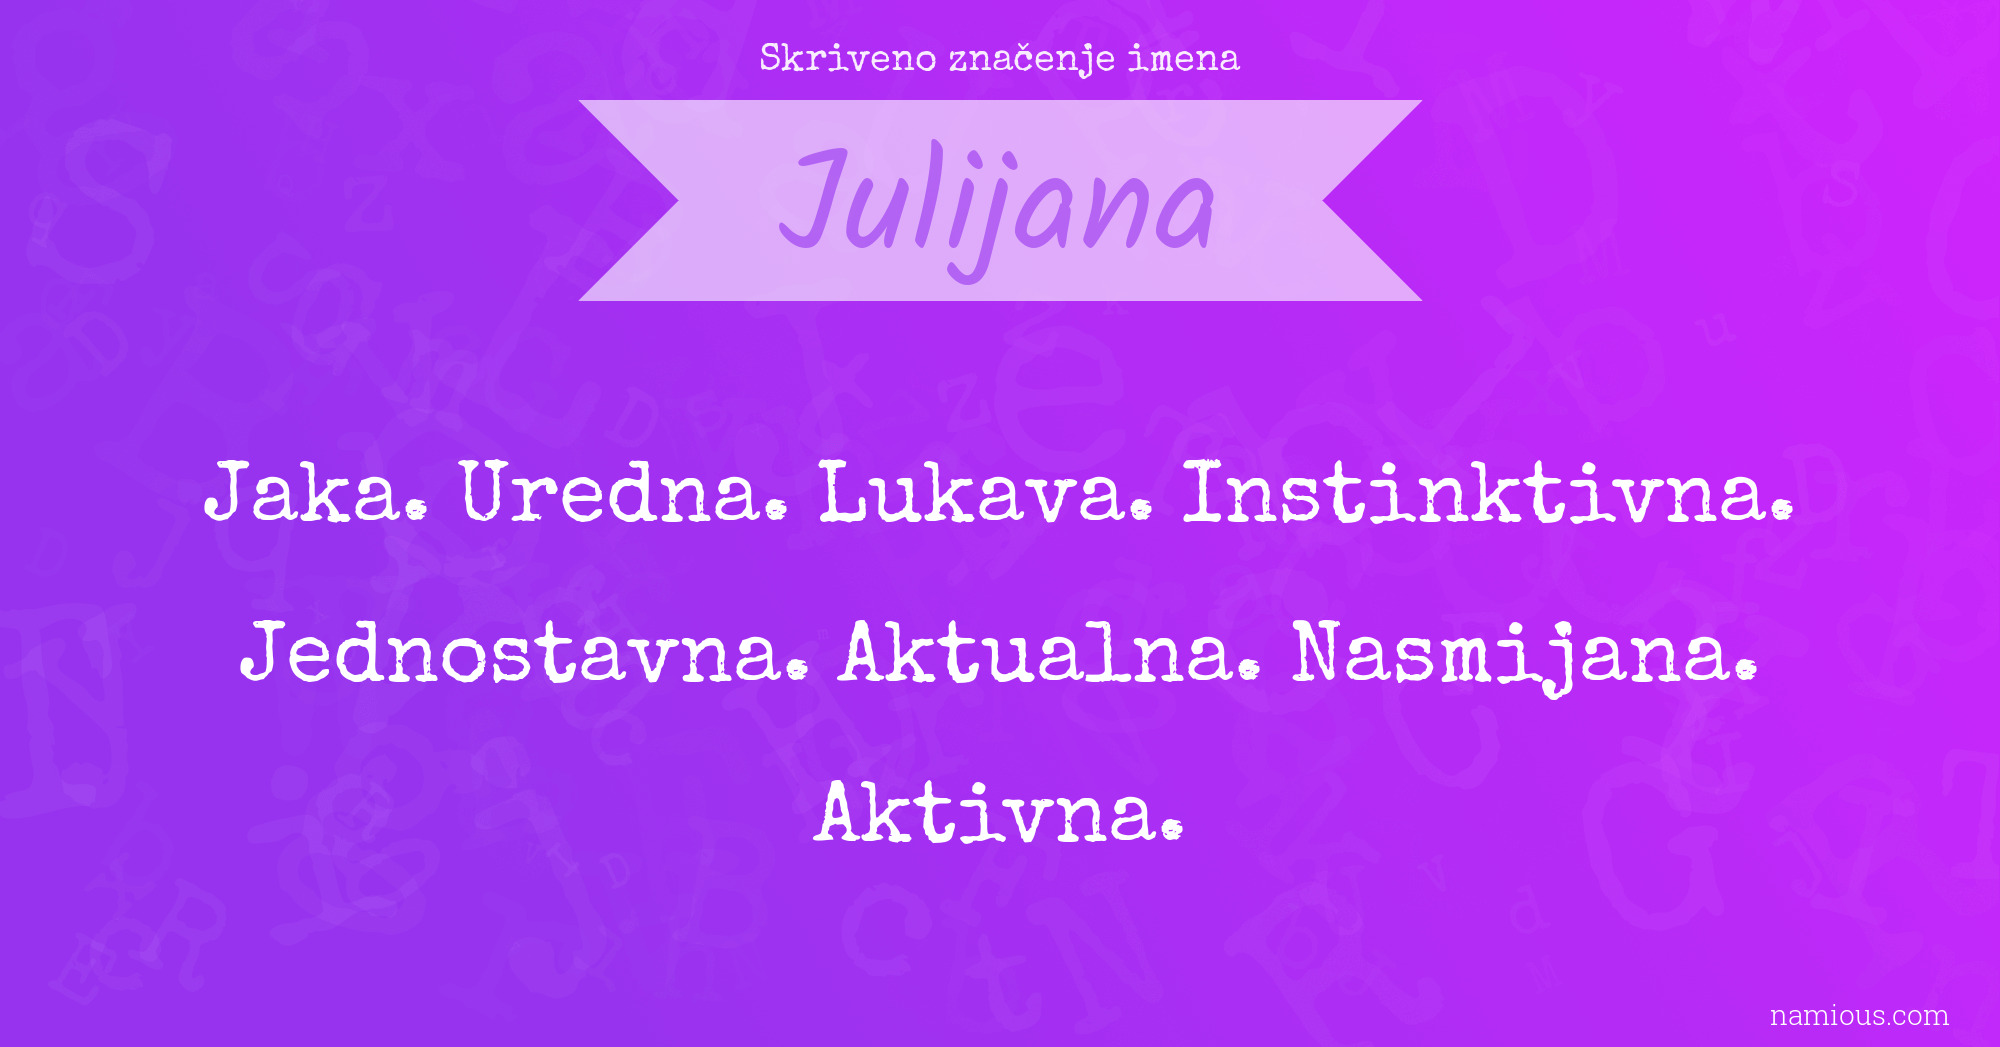 Skriveno značenje imena Julijana